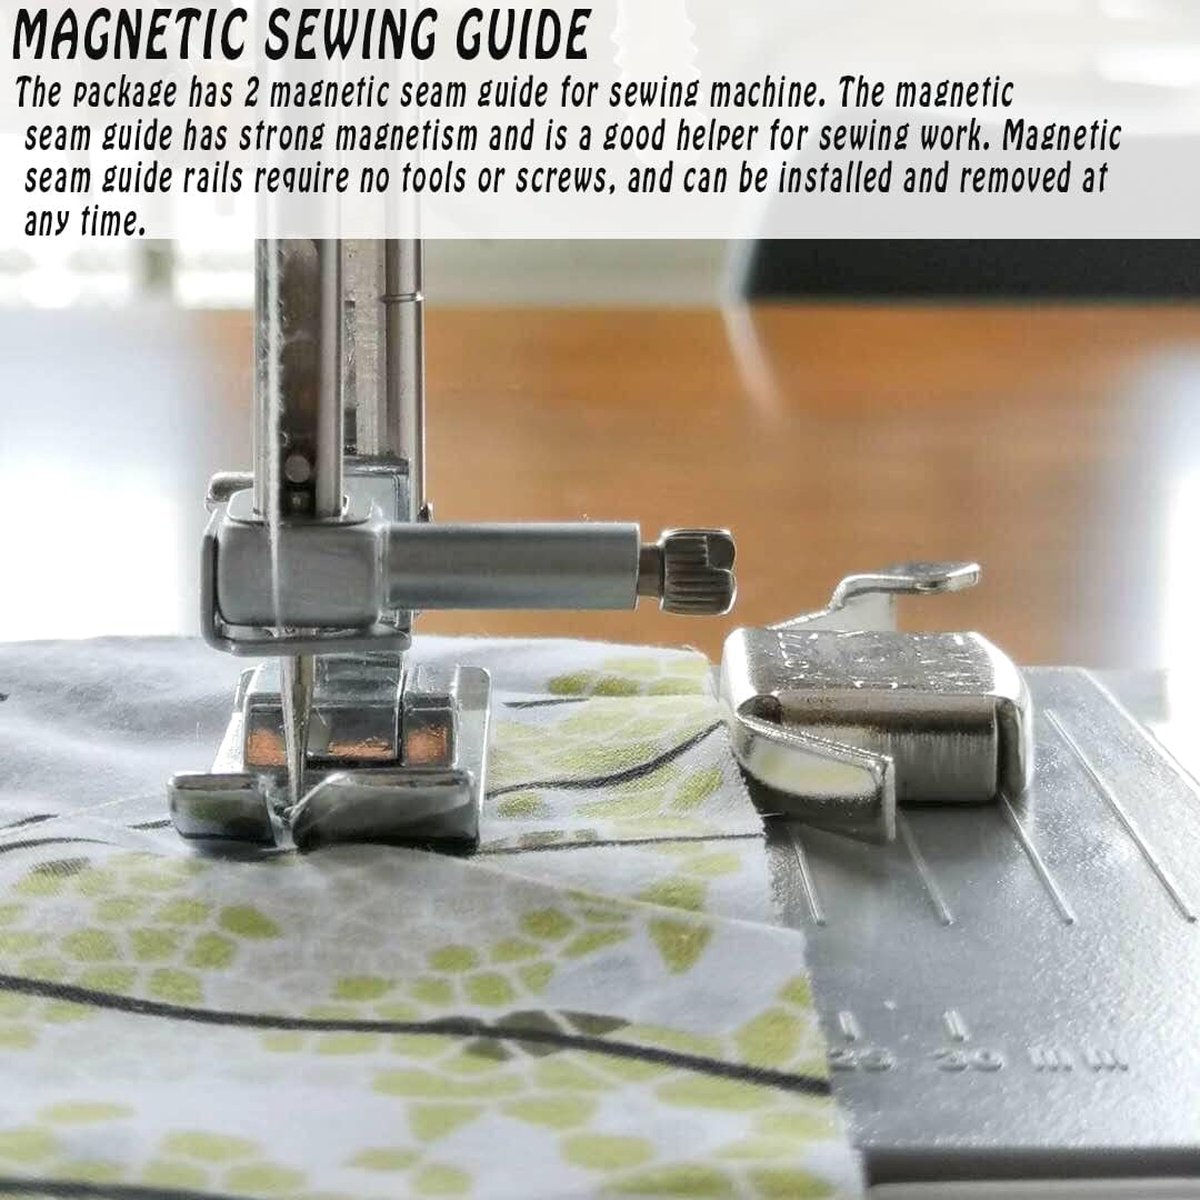 Guide de couture magnétique 6 pièces, fournitures de couture pour